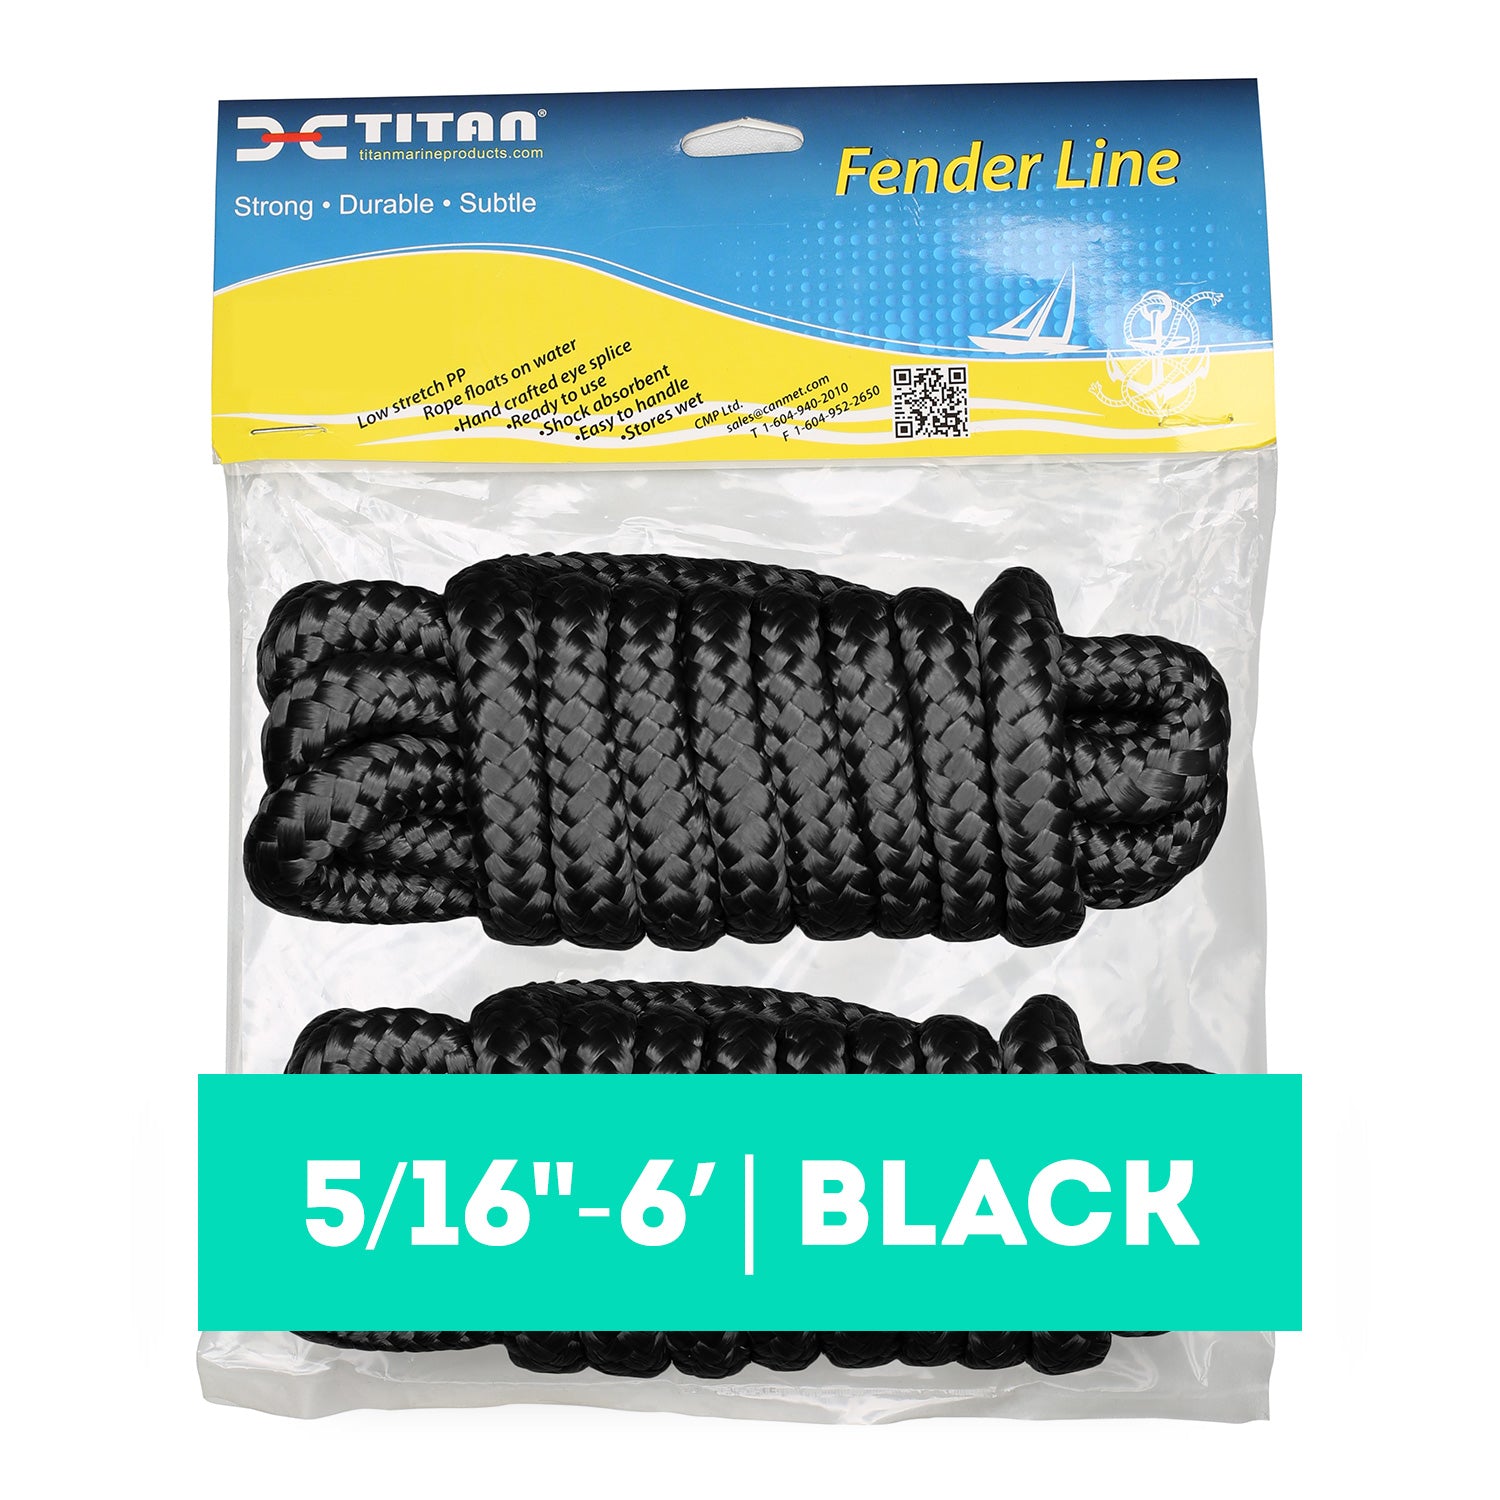 Titan 5/16in-6ft 3-strand Fender Line - Black, 2pcs